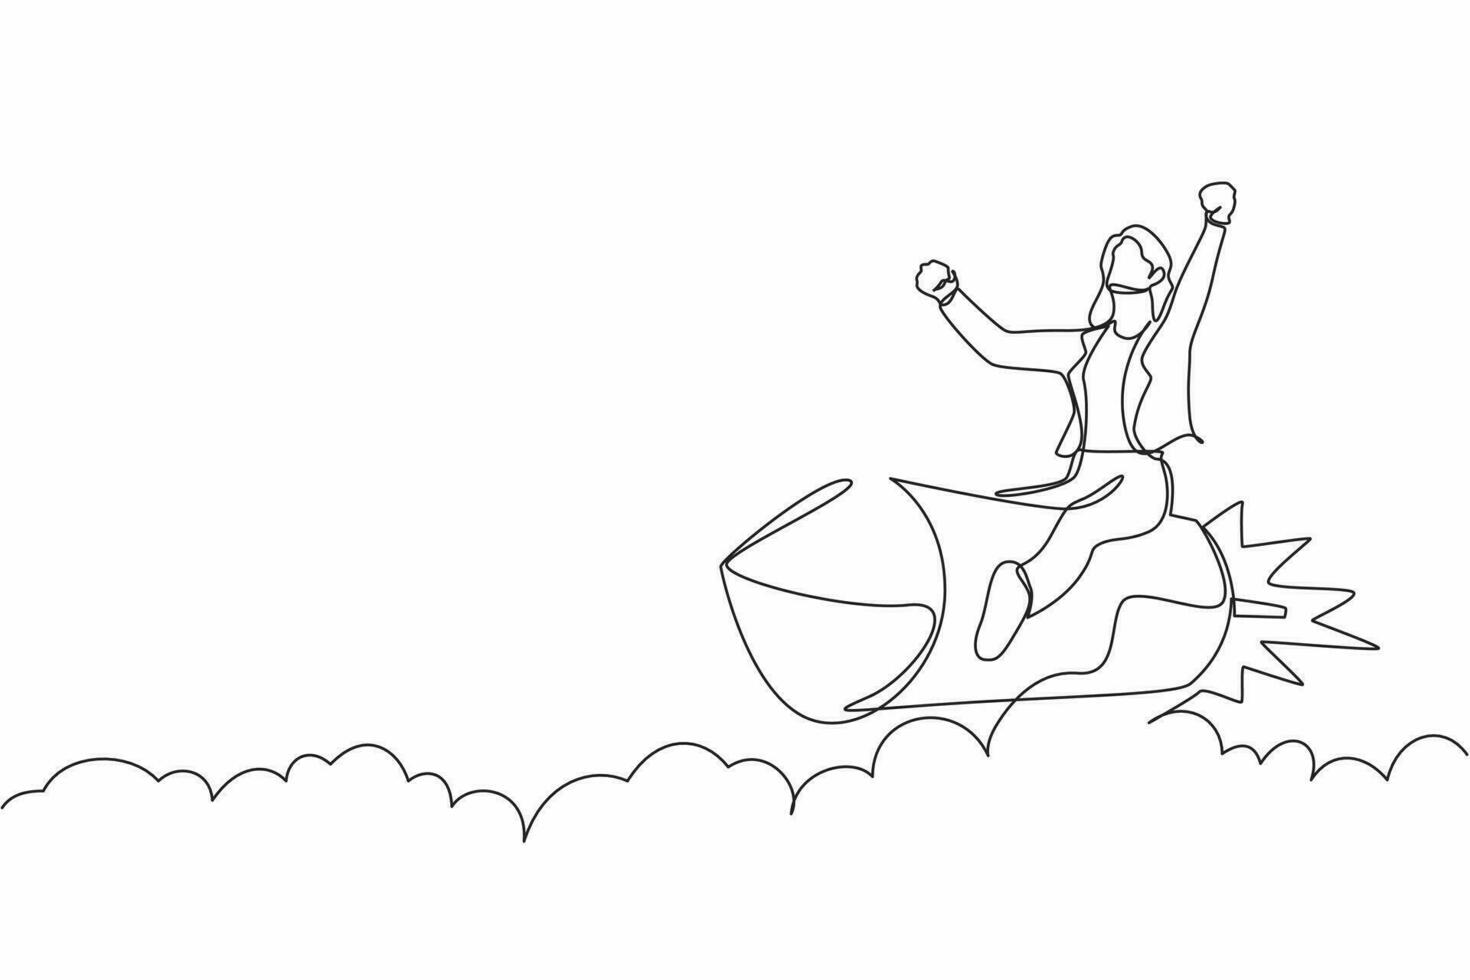 soltero continuo línea dibujo mujer de negocios montando un cohete mediante el cielo, concepto para negocio éxito o innovación. minimalista metáfora. dinámica uno línea dibujar gráfico diseño vector ilustración